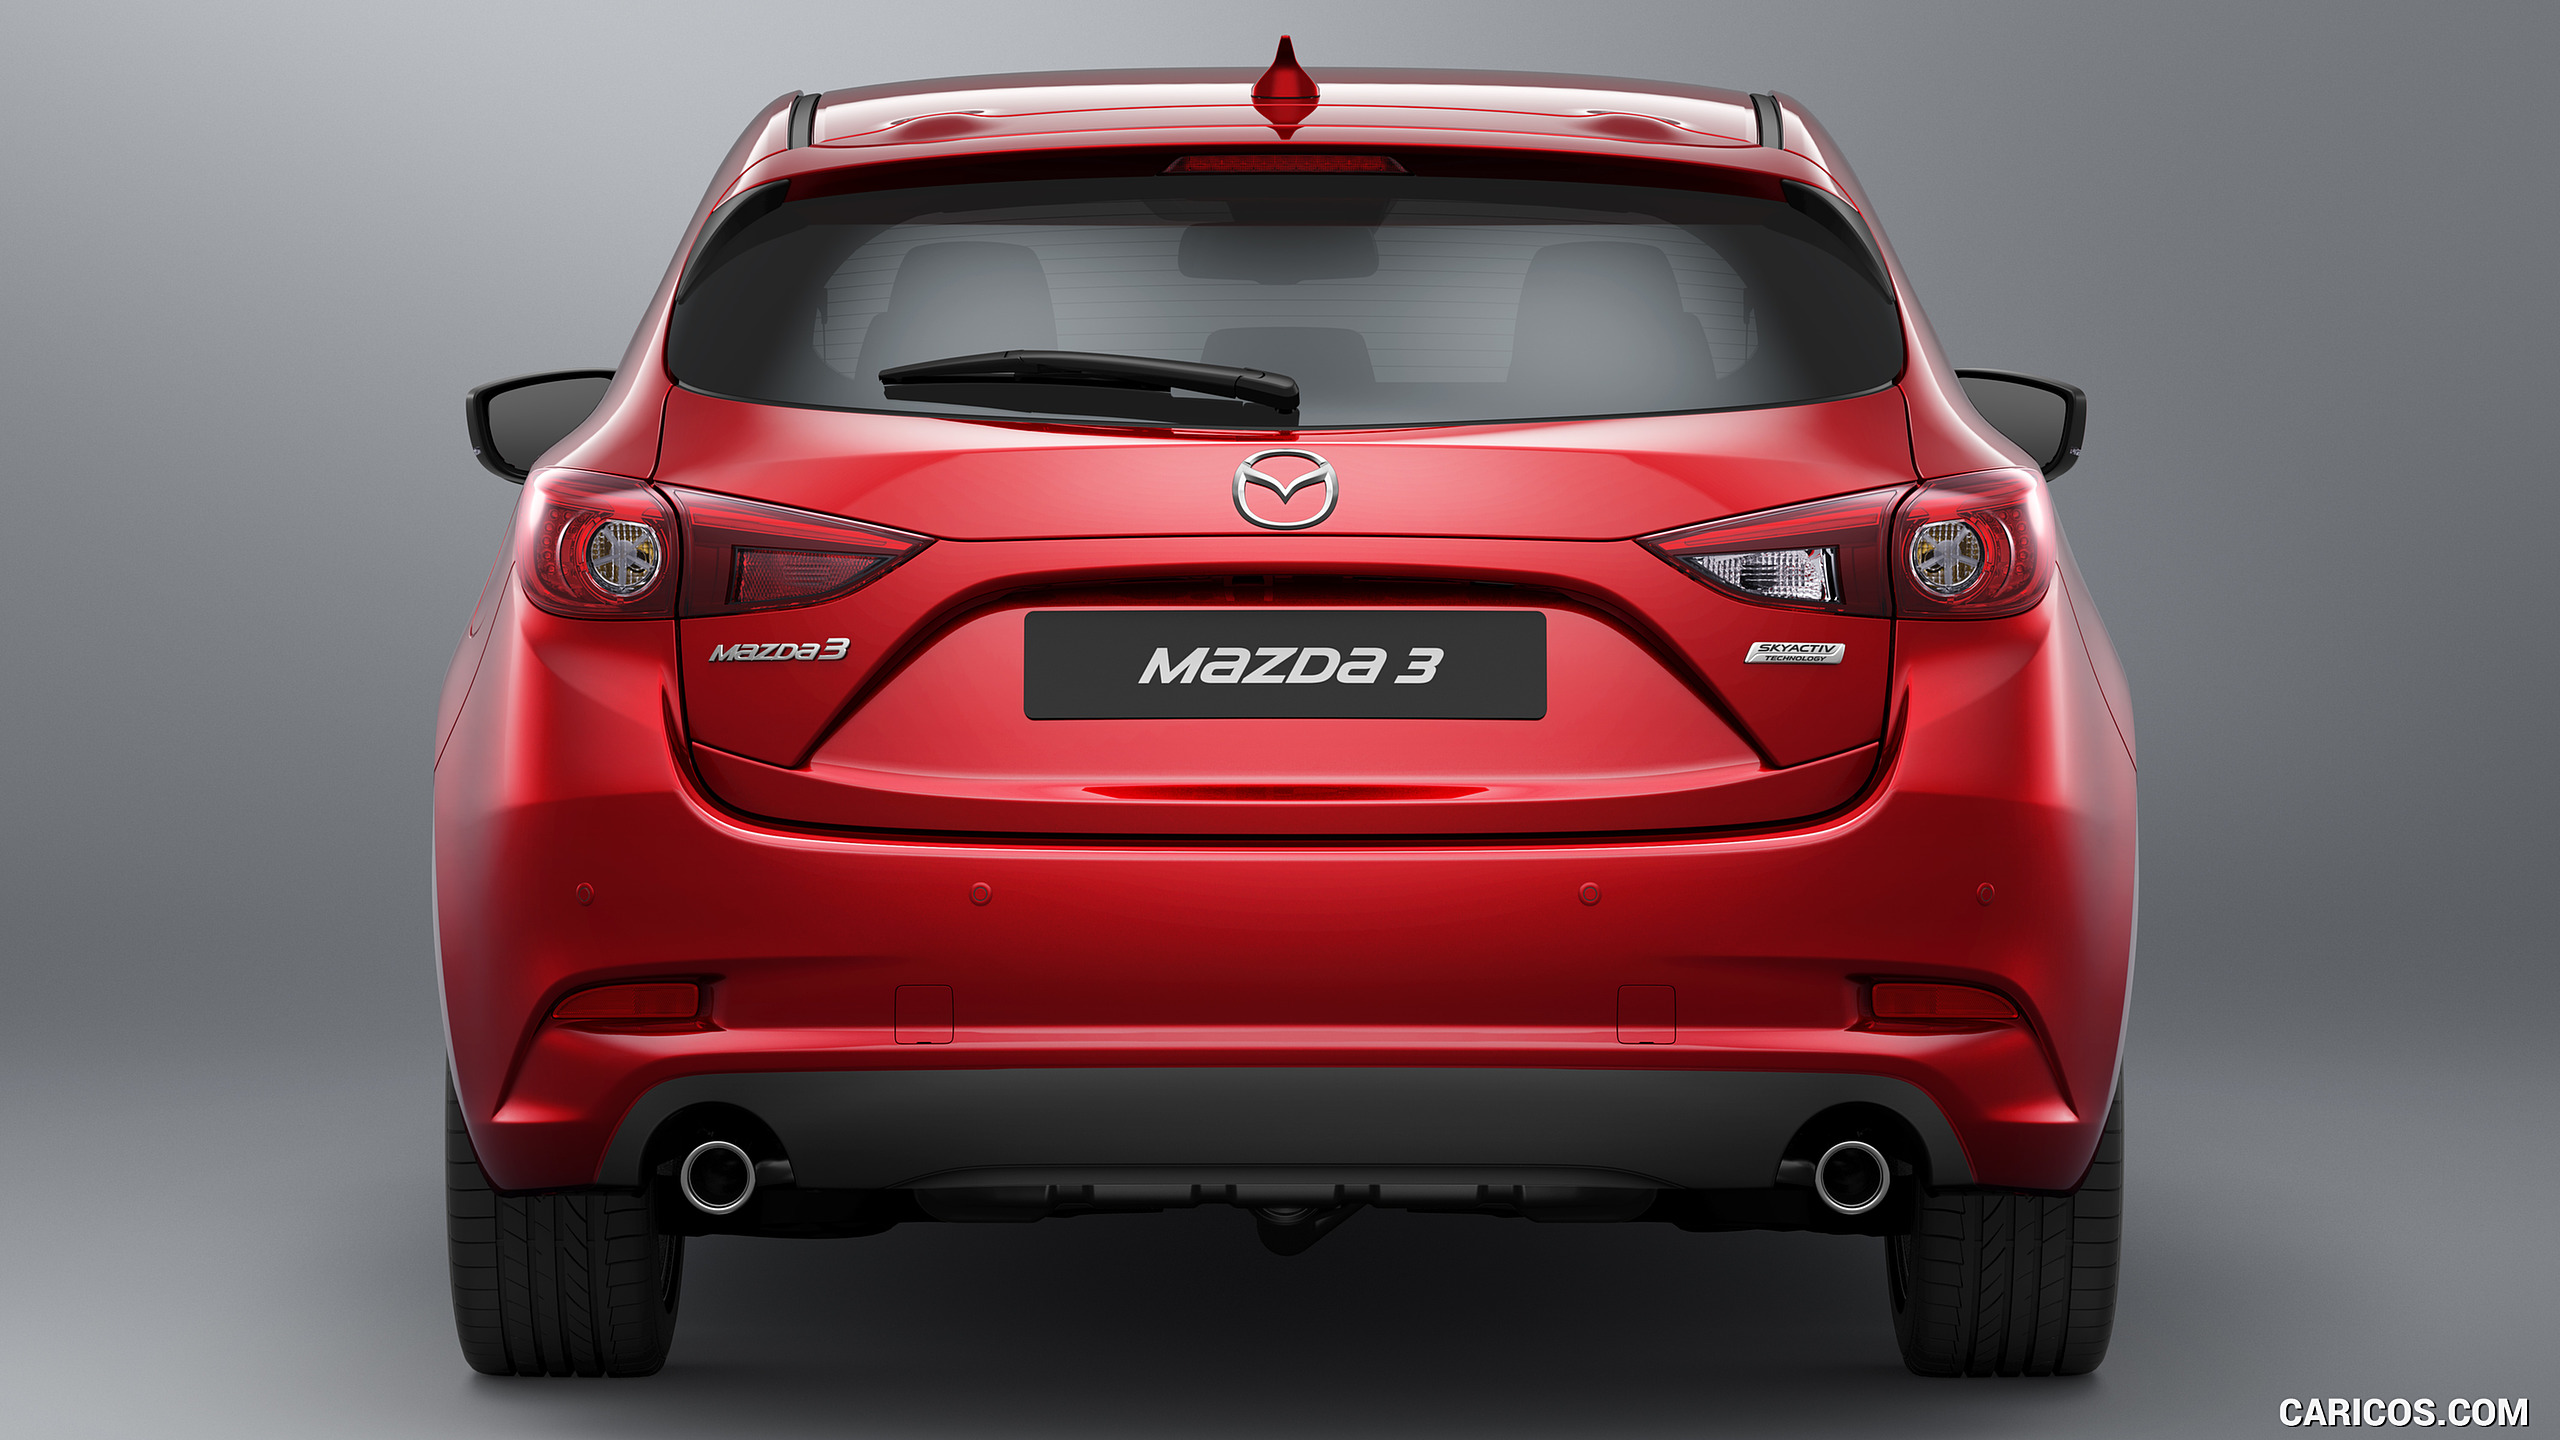 2017 Mazda 3 5-Door Hatchback - Rear, #15 of 19